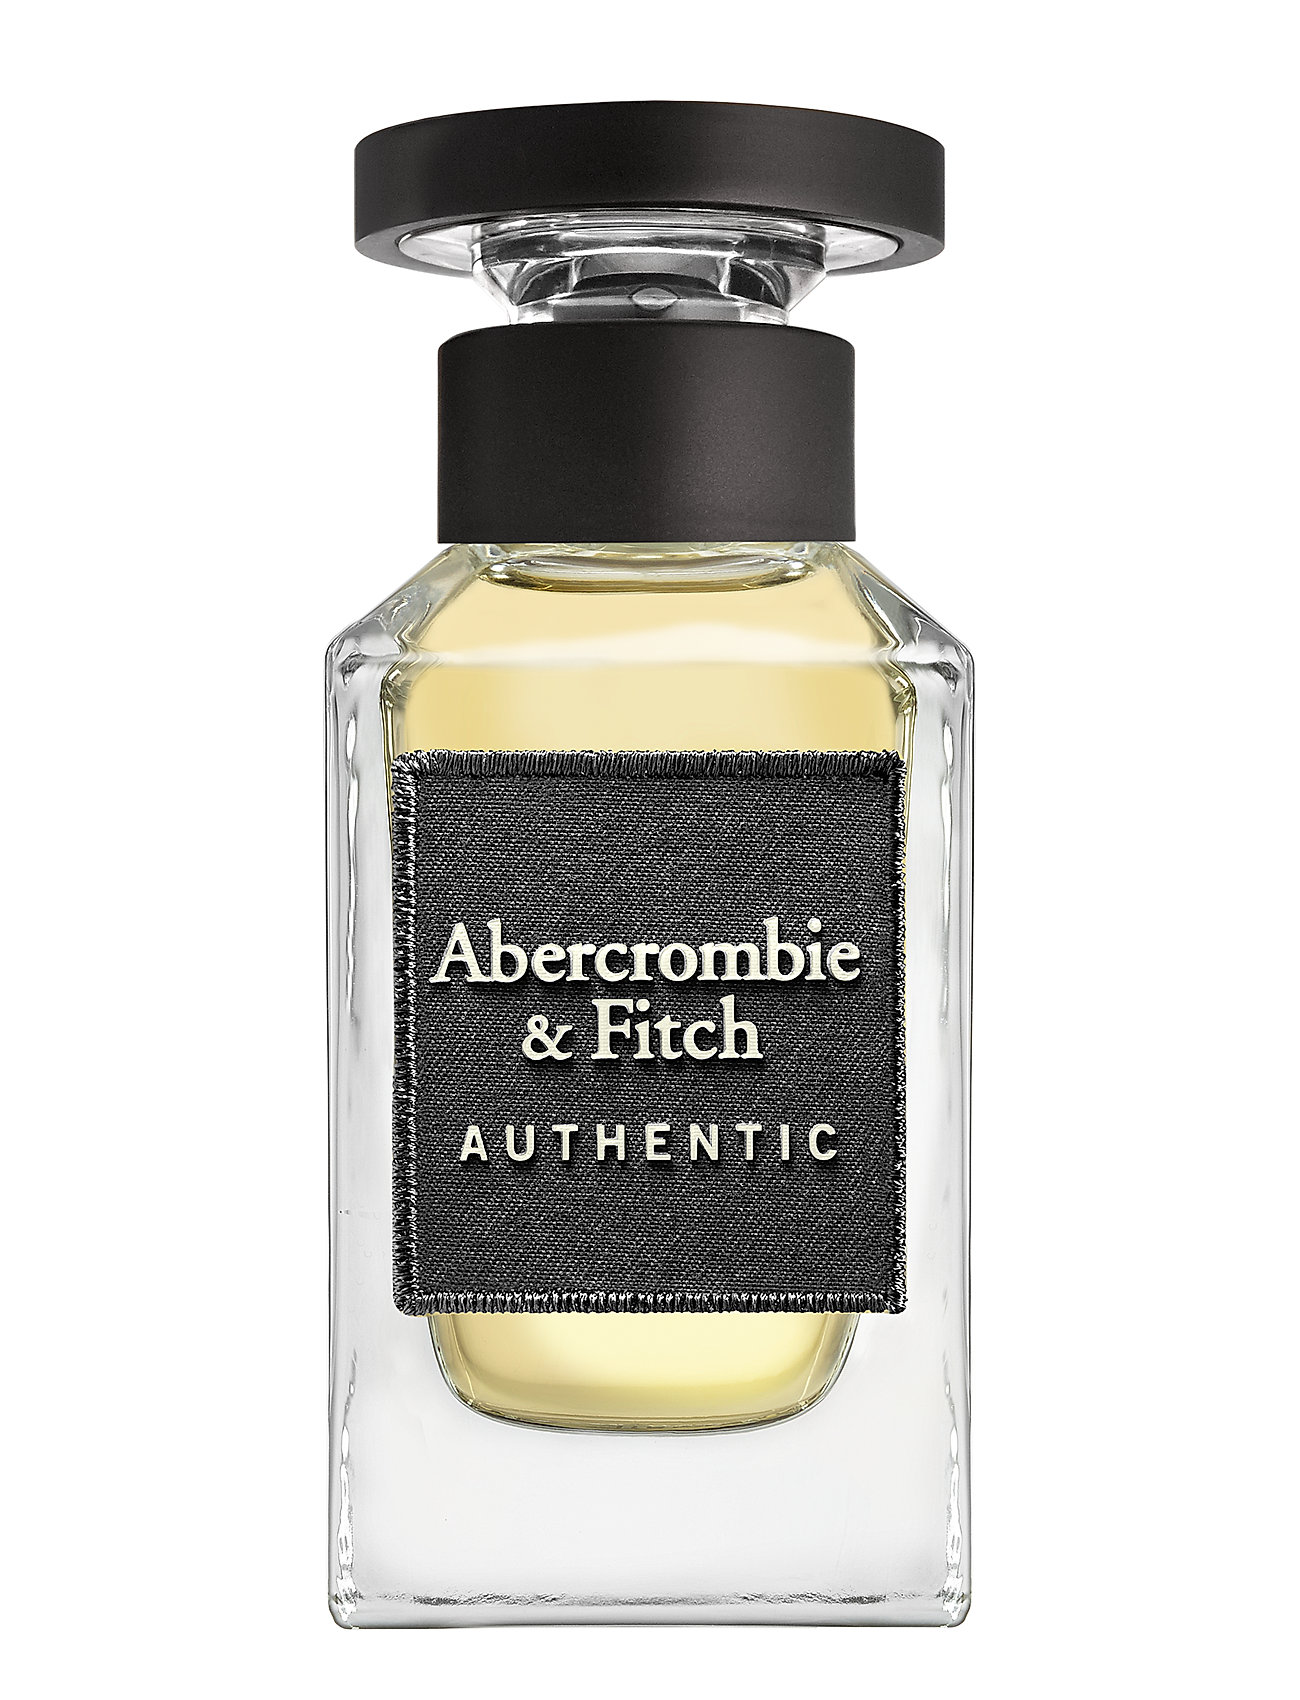 Abercrombie & Fitch Authentic Men Edt - 269 kr | Boozt.com